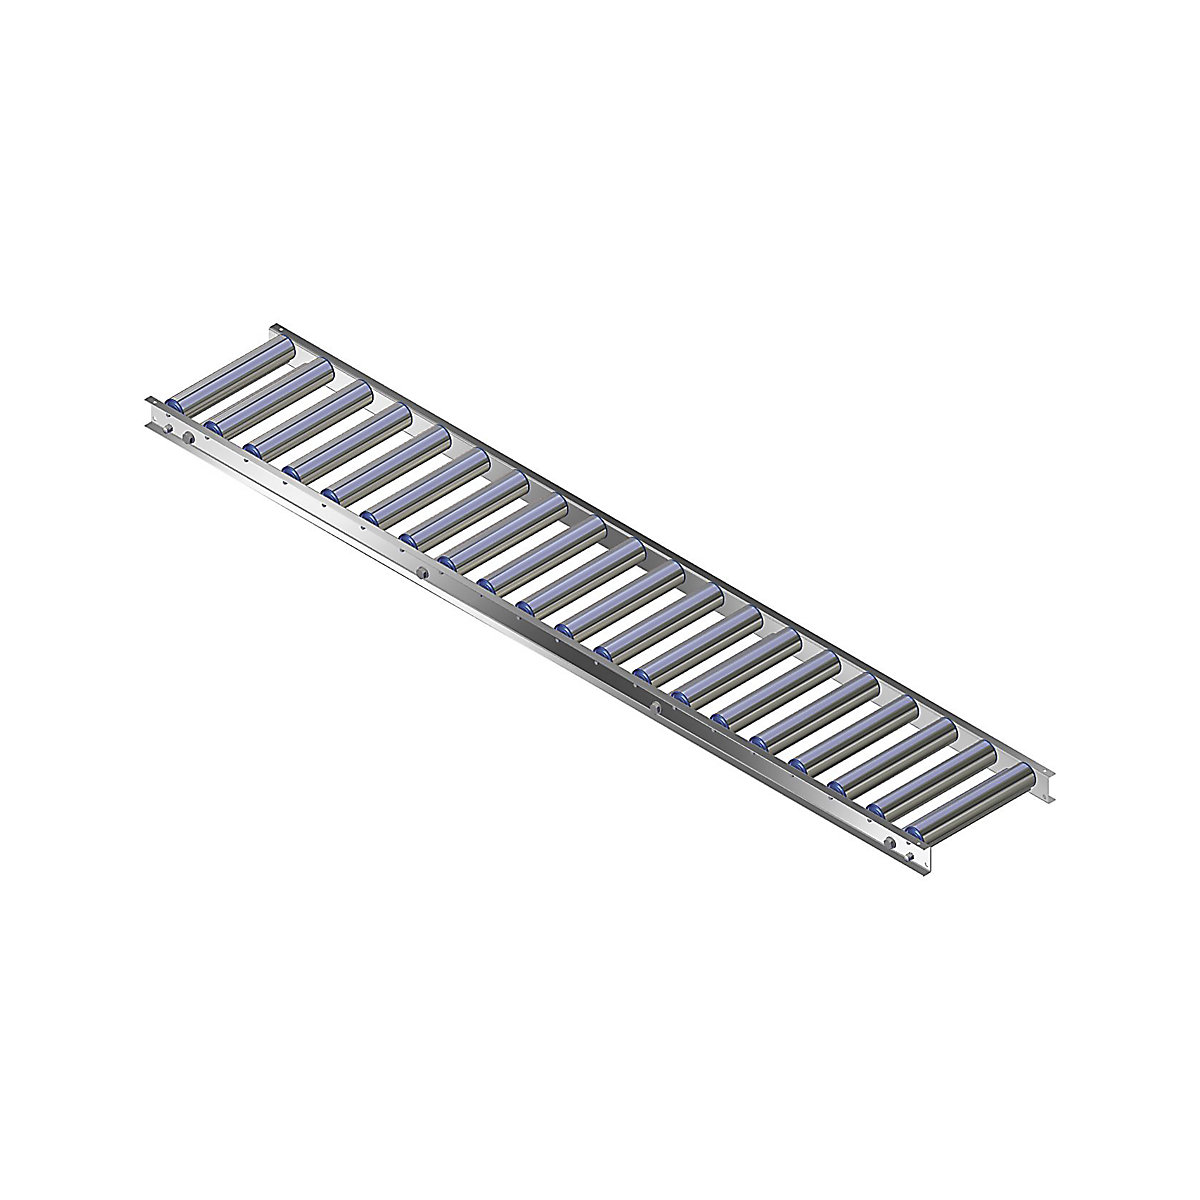 Ľahká valčeková dráha, hliníkový rám s hliníkovými valčekmi – Gura, šírka dráhy 300 mm, vzdialenosť osí 100 mm, dĺžka 2,0 m